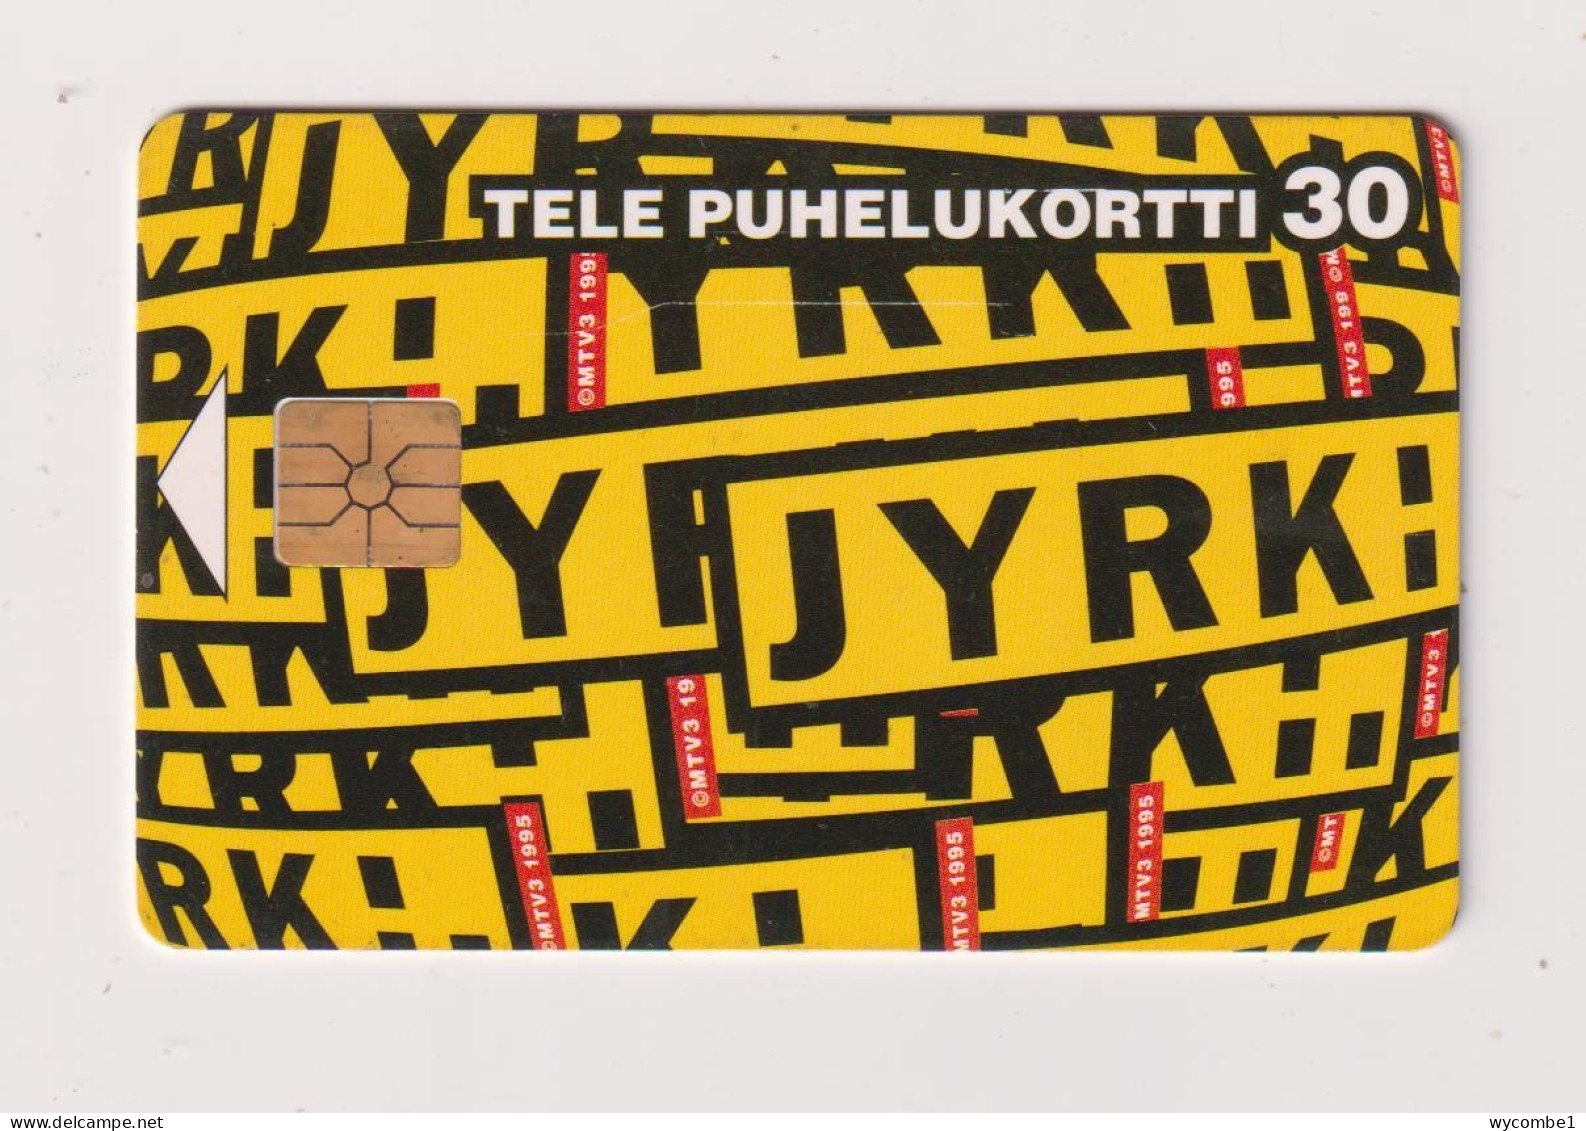 FINLAND - Jyrk Chip Phonecard - Finlande